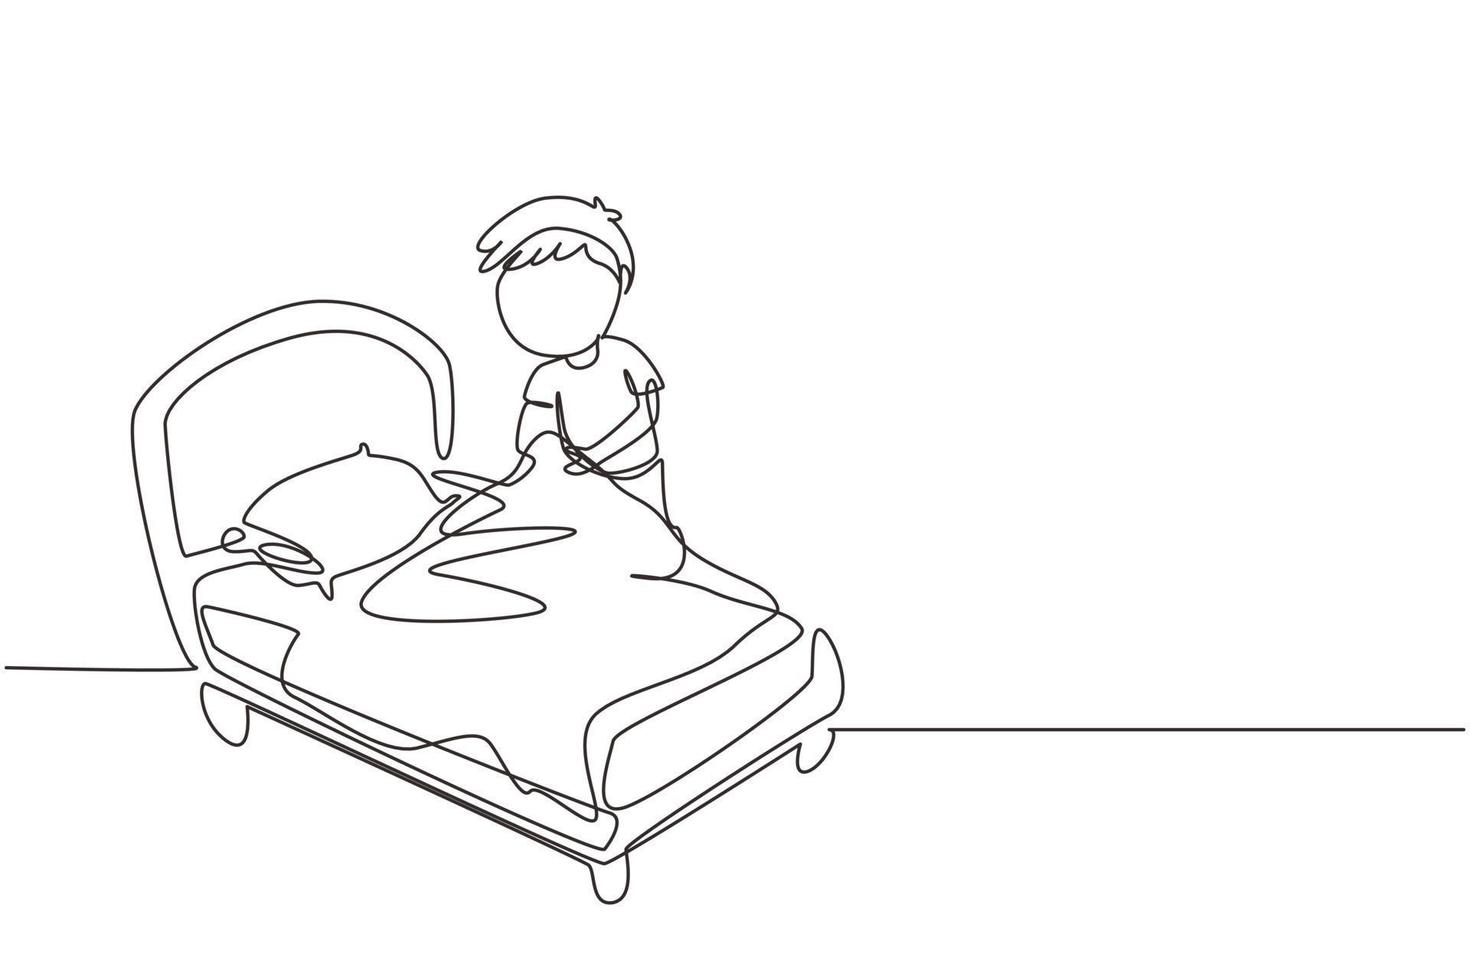 único desenho de linha contínua garotinho fazendo a cama. crianças fazendo tarefas domésticas no conceito de casa. rotina das crianças depois de acordar para arrumar a cama. uma linha desenhar ilustração em vetor design gráfico